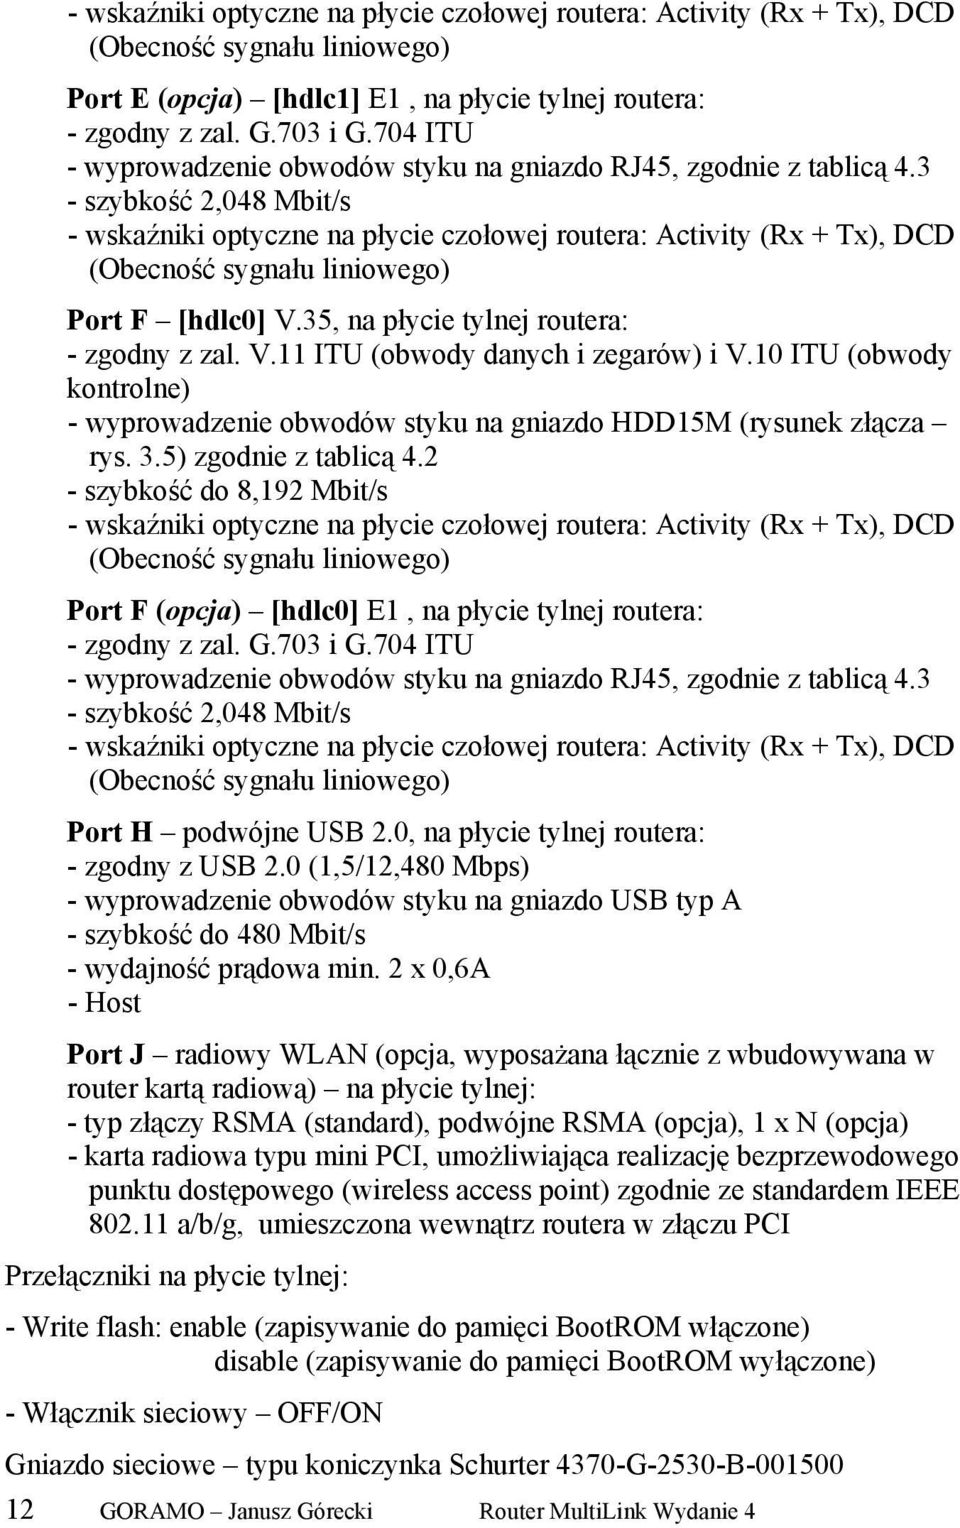 3 - szybkość 2,048 Mbit/s - wskaźniki optyczne na płycie czołowej routera: Activity (Rx + Tx), DCD (Obecność sygnału liniowego) Port F [hdlc0] V.35, na płycie tylnej routera: - zgodny z zal. V.11 ITU (obwody danych i zegarów) i V.